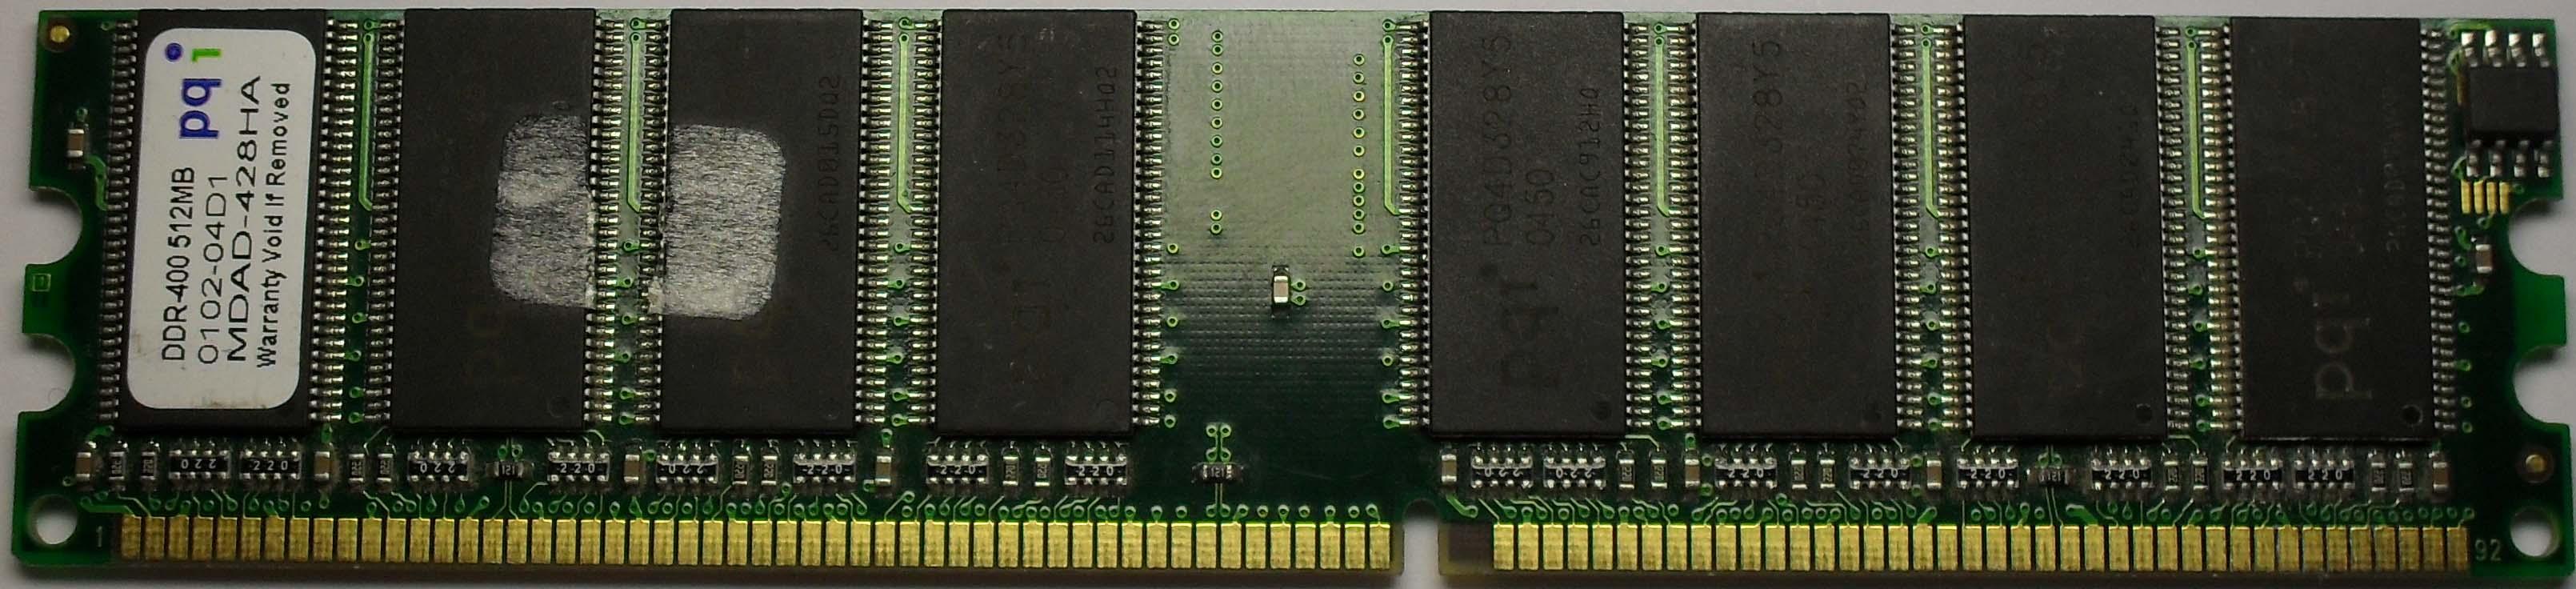 Интегральная микросхема памяти ddr3. DIMM С двумя ключами. Модуль МИП-2и. Фото ячеек кристалла DDR SDRAM. Шина памяти бит